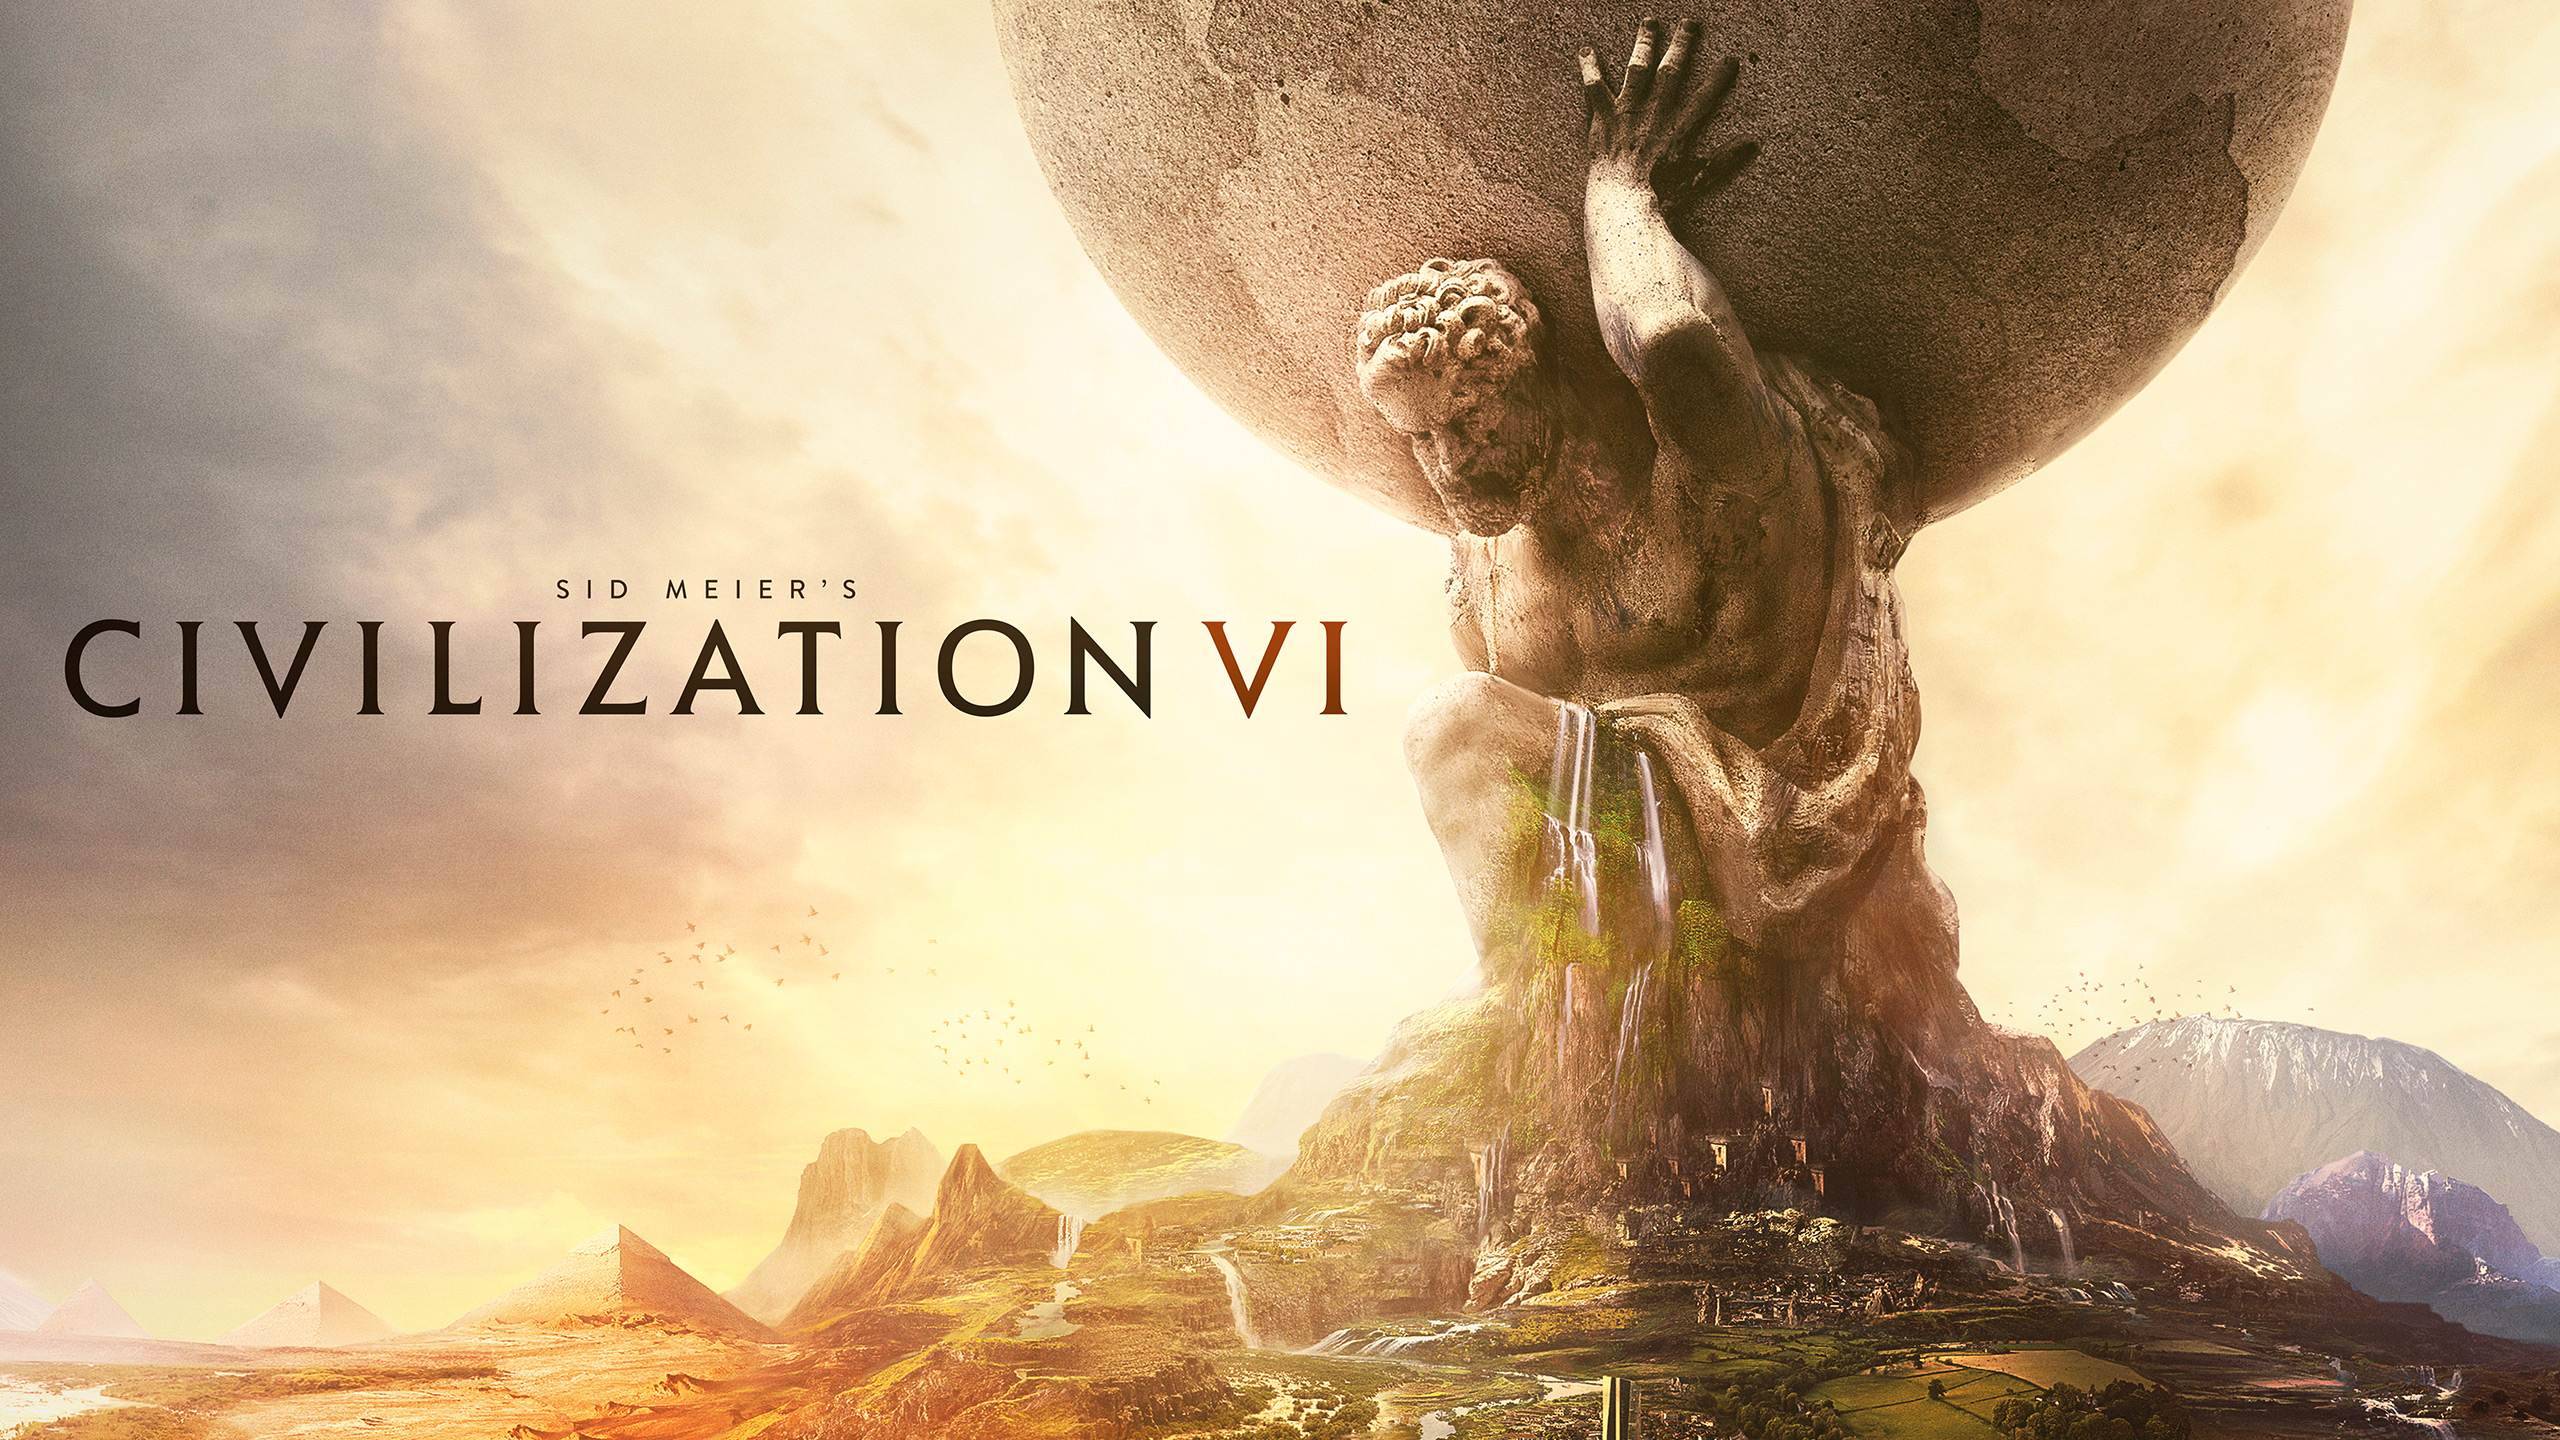 Sid Meier’s Civilization VI ★ Божество ★ Испанская империя ★ Часть 2